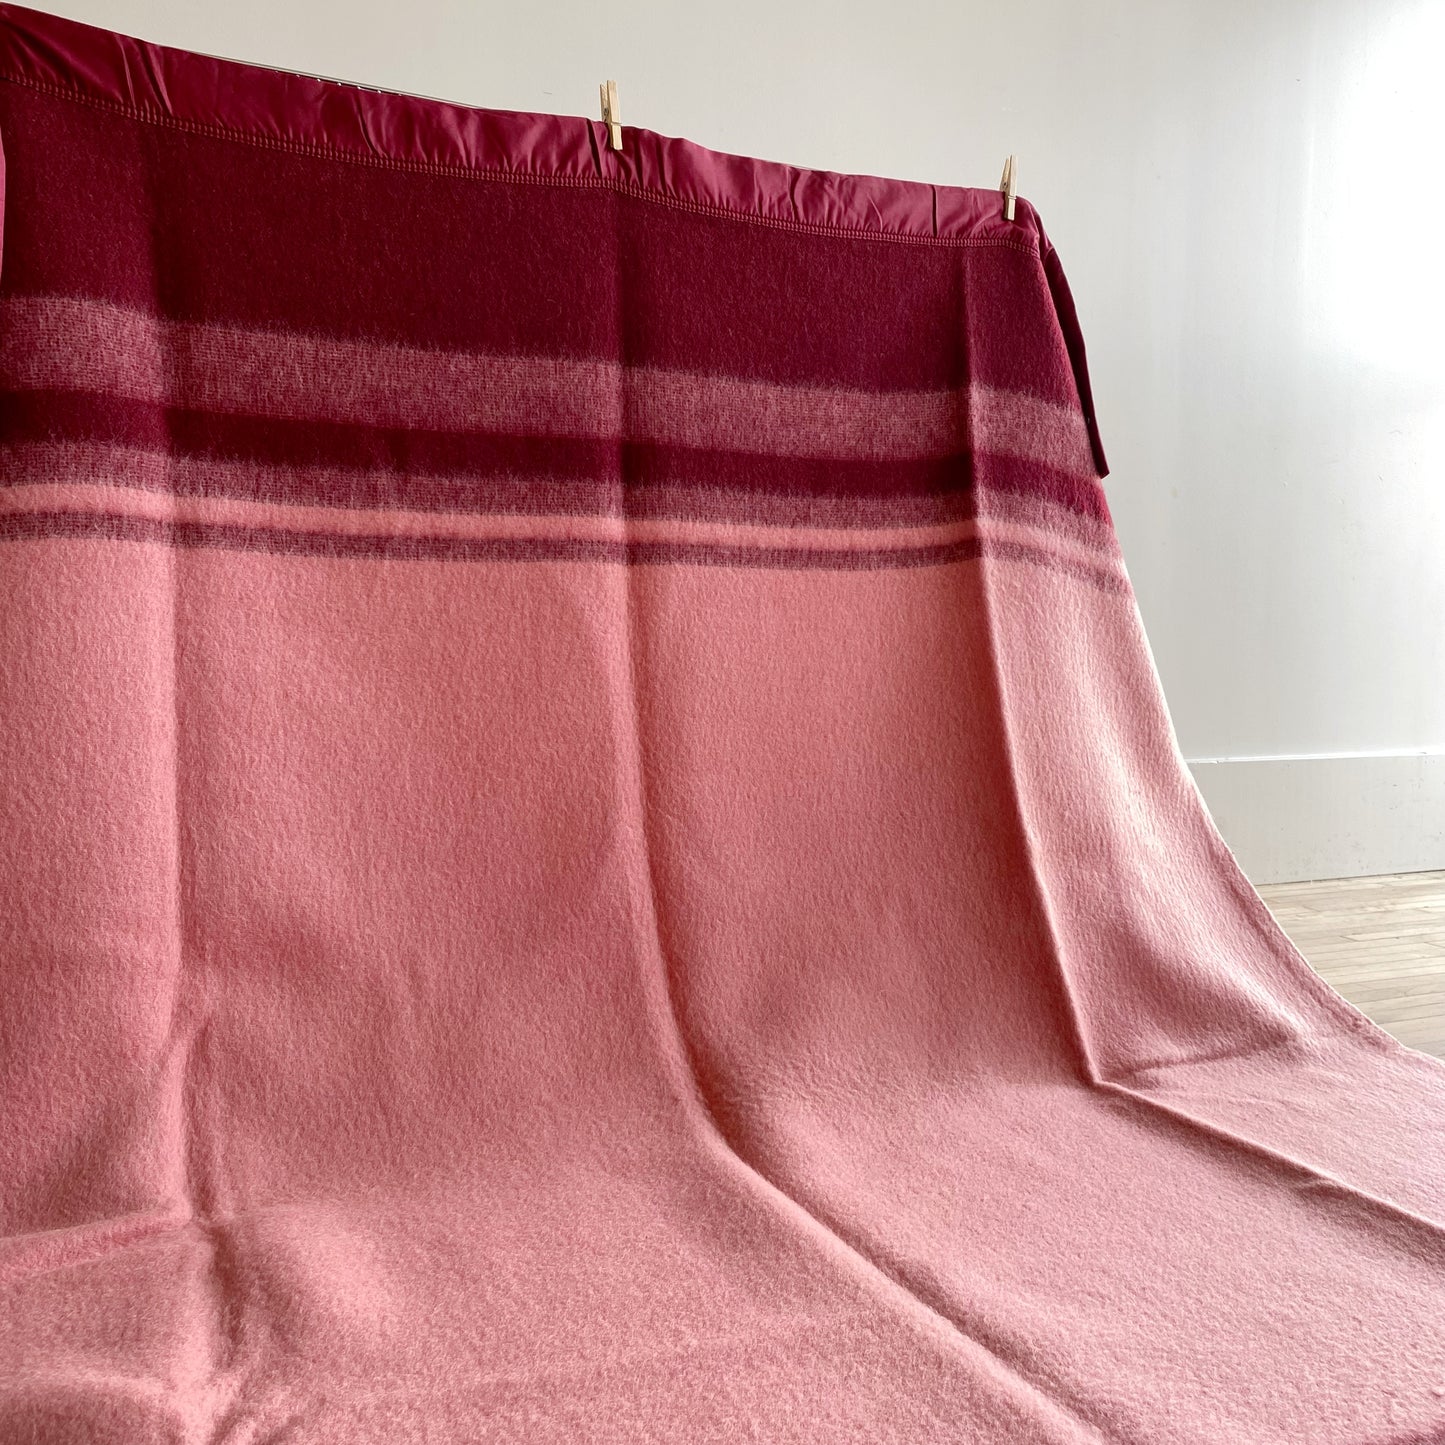 Vintage Wool Blanket by Faribo- 70x84